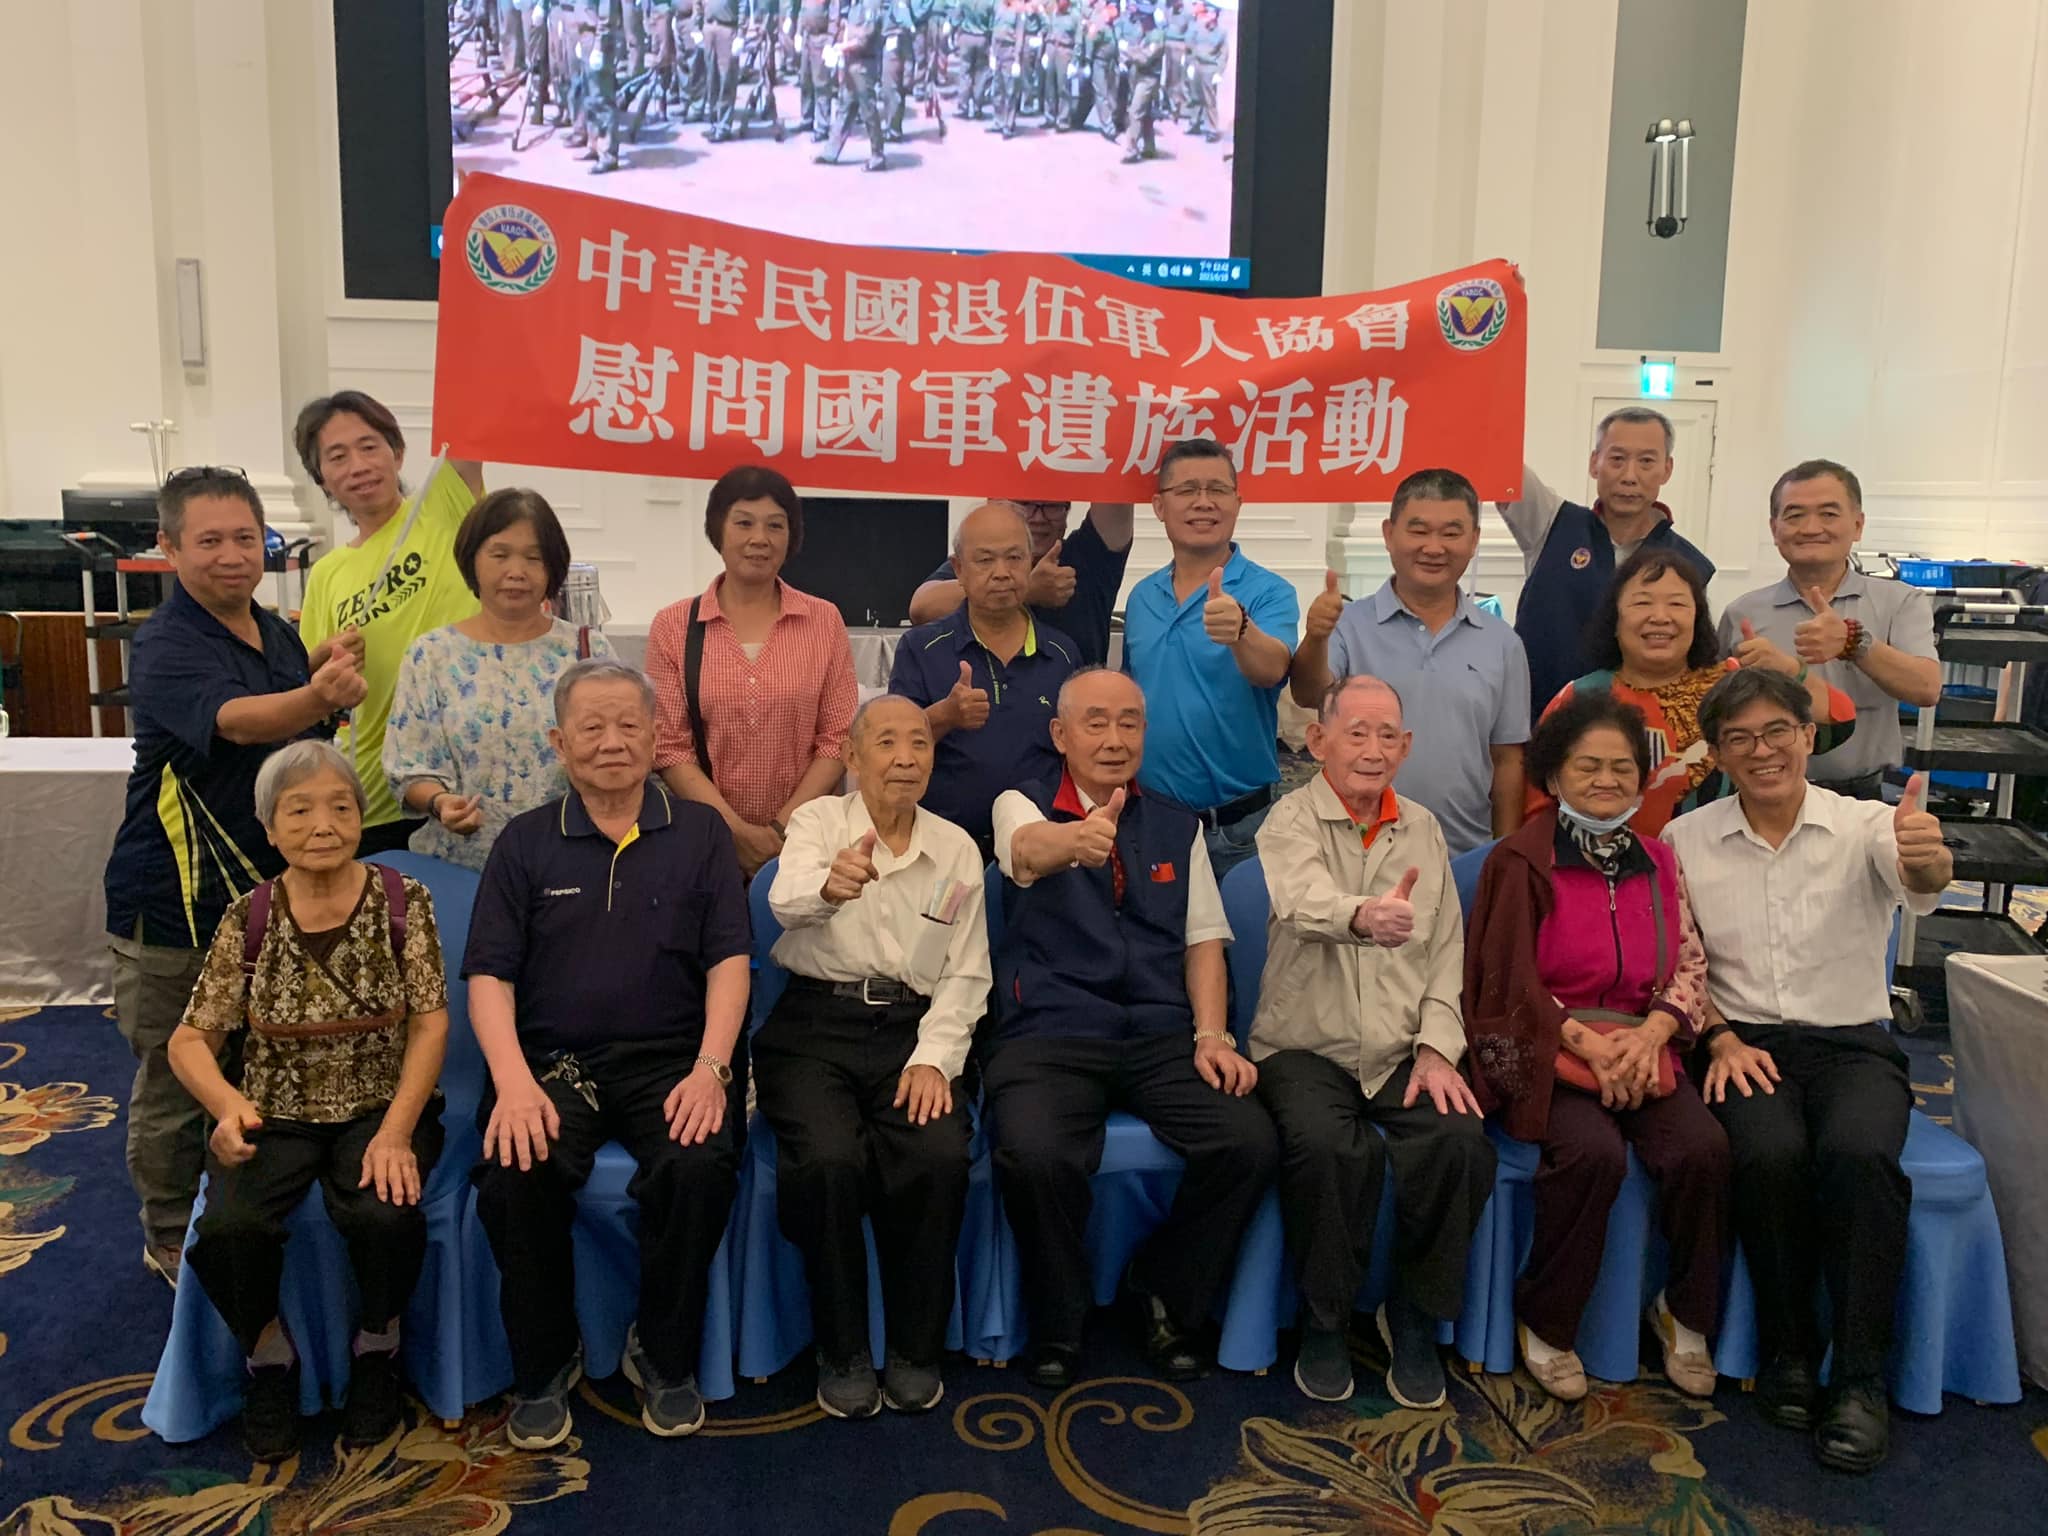 臺中市榮服處出席中華民國退伍軍人協會「慶祝黃埔久久榮譽團結大會」活動